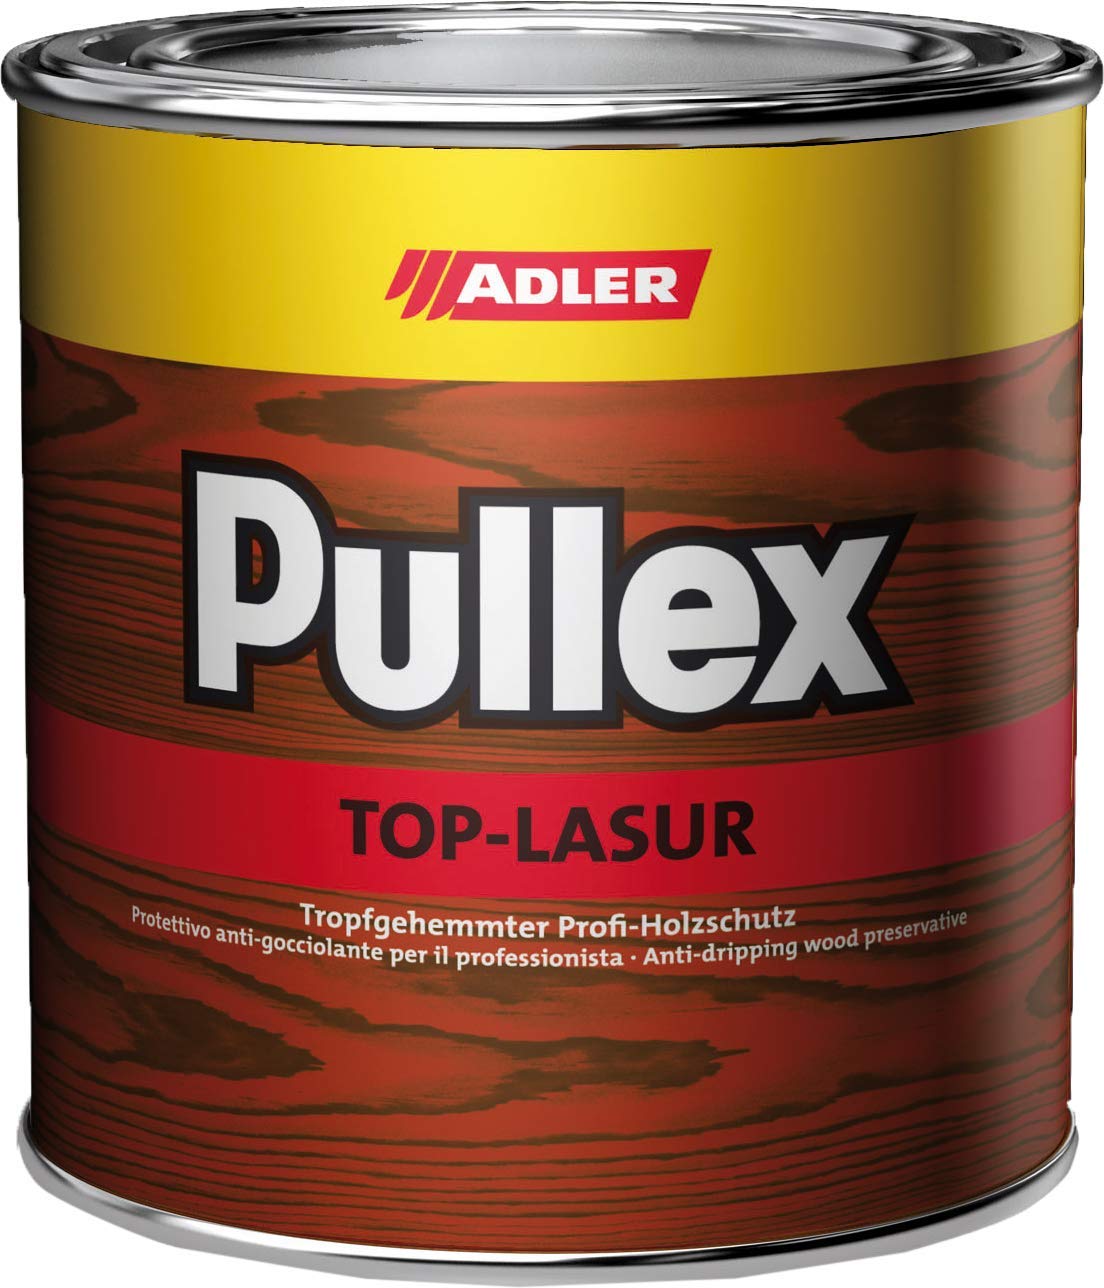 ADLER Pullex Top-Lasur - 2,5 L Kiefer - Tropfgehemmte Holzlasur in Profi-Qualität für Holz außen - Lasur in verschiedenen Holzfarbtönen